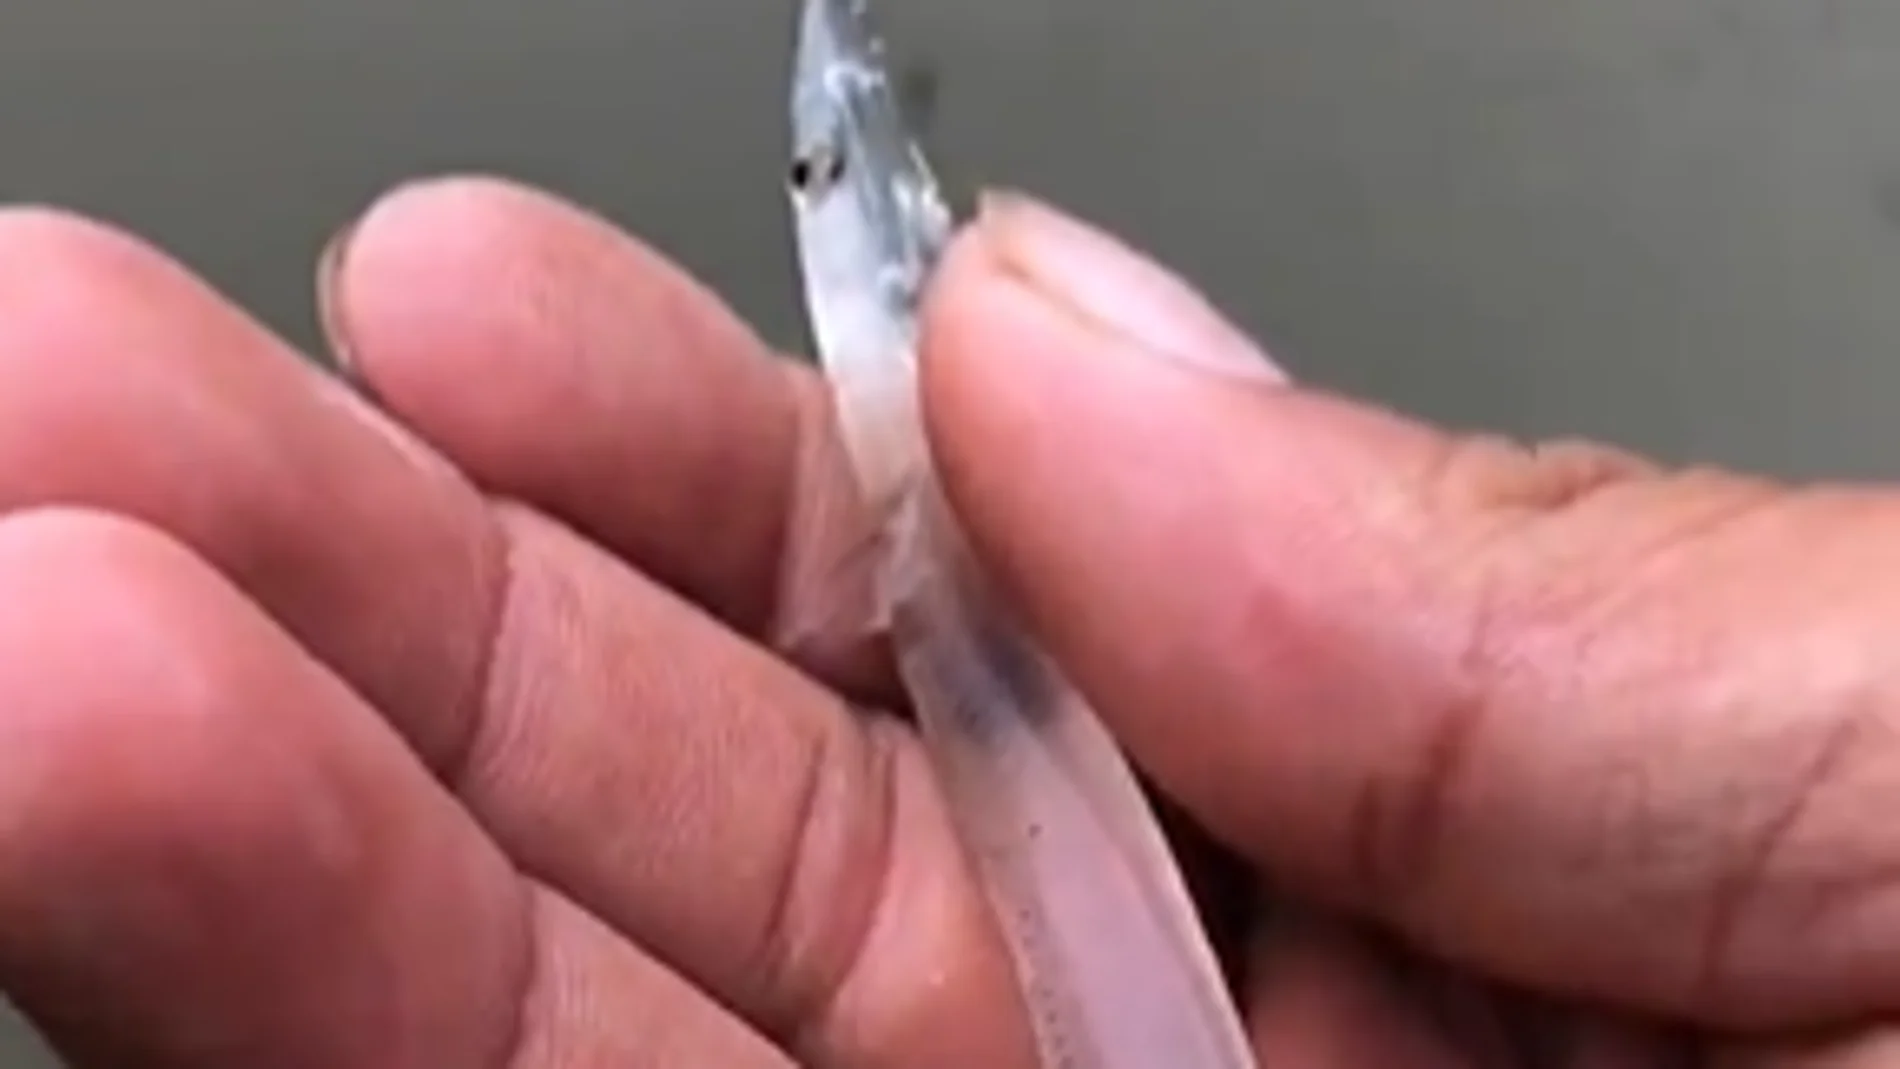 Vídeo: Encuentran un extraño animal transparente en una playa 